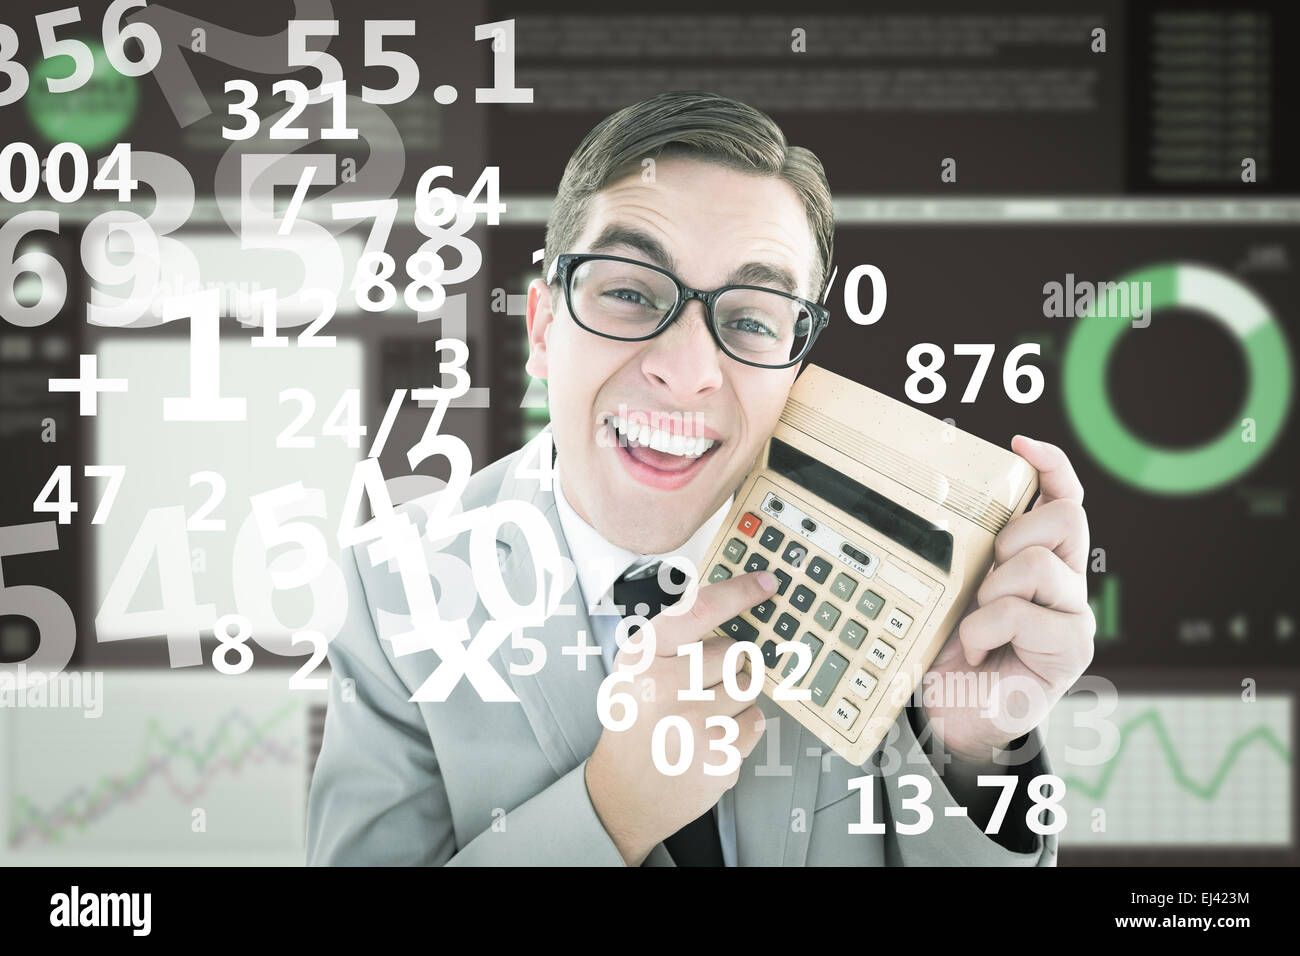 Immagine composita di geeky sorridente imprenditore che mostra la calcolatrice Foto Stock